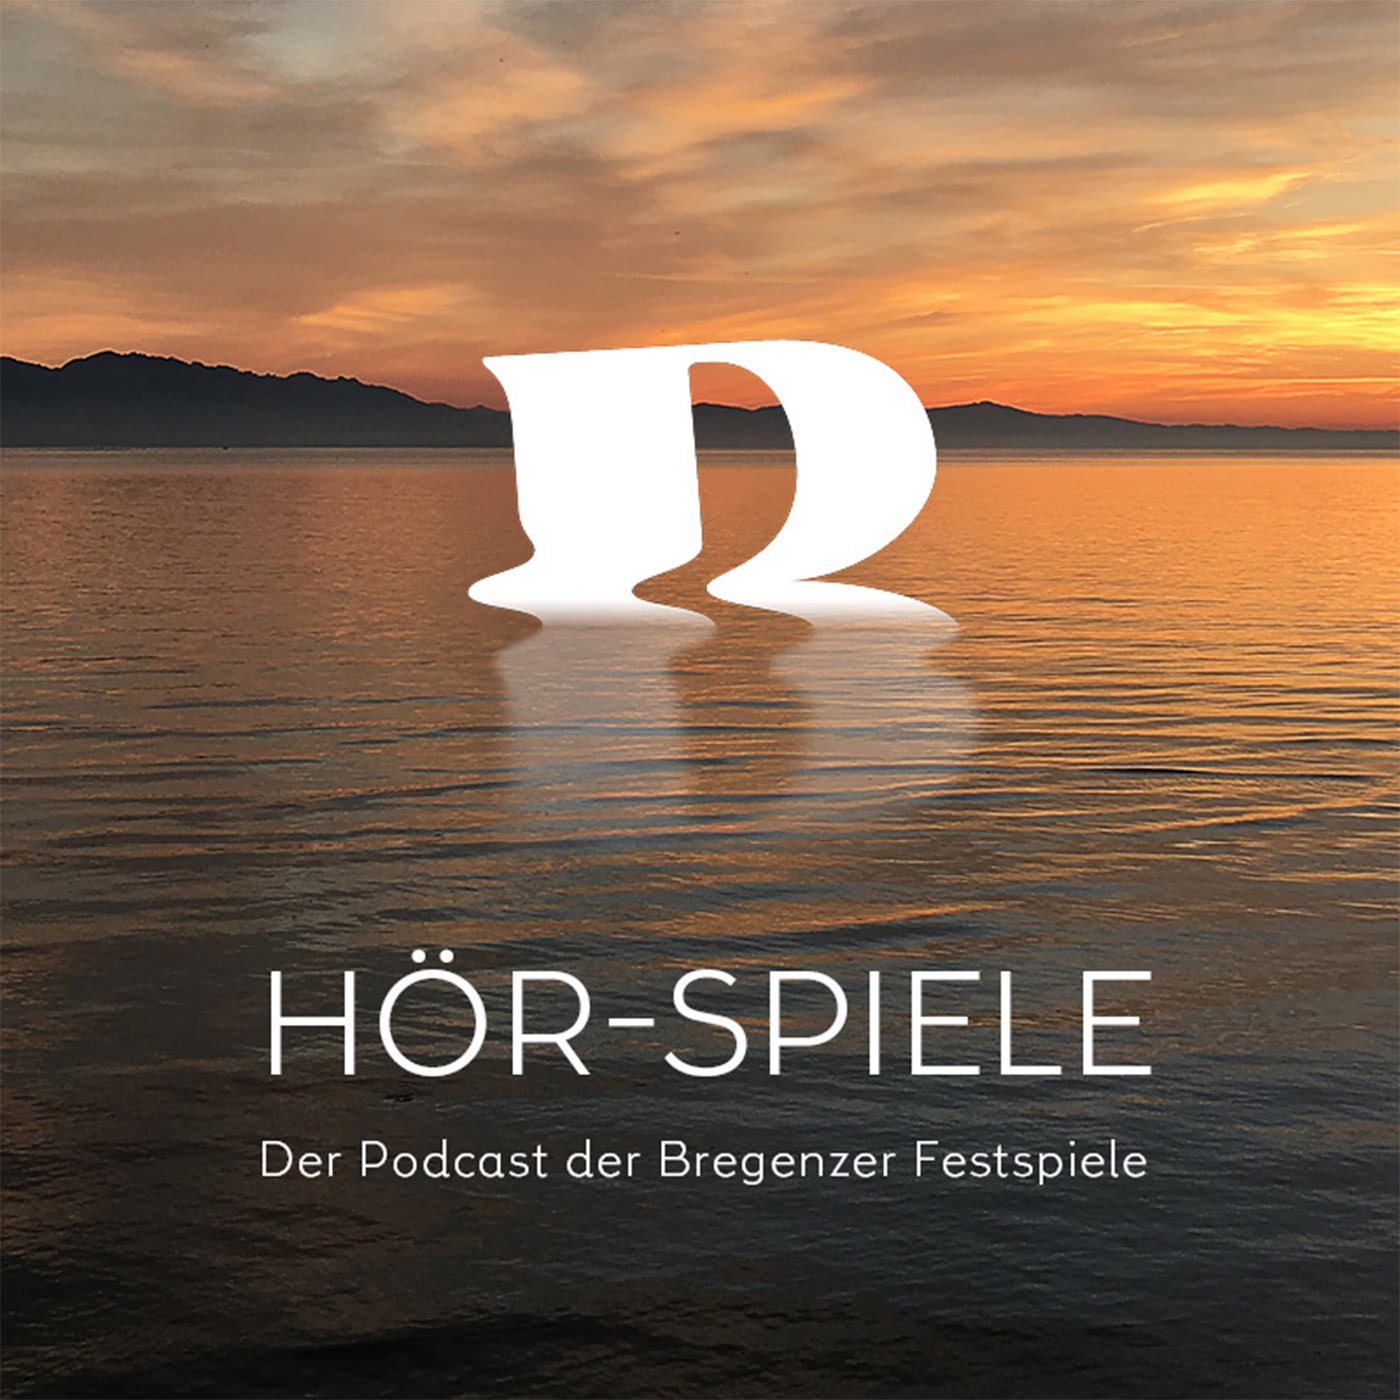 HÖR-SPIELE - Der Podcast der Bregenzer Festspiele